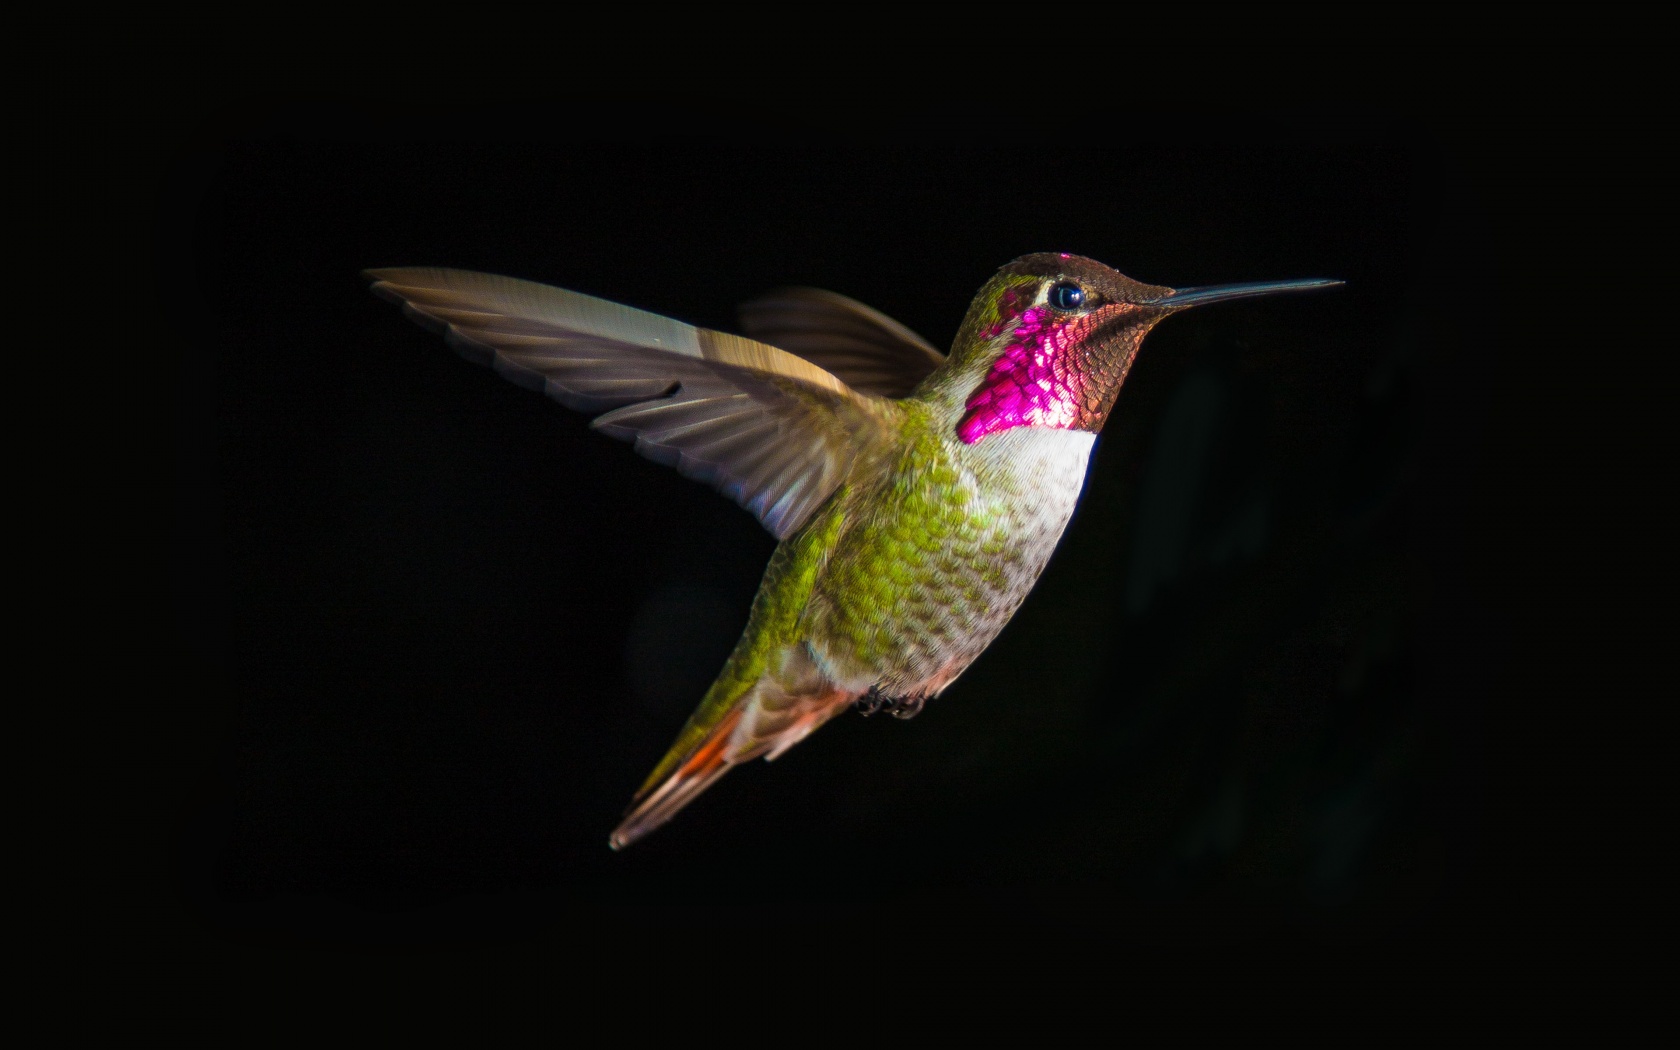 Hummingbird In Flight